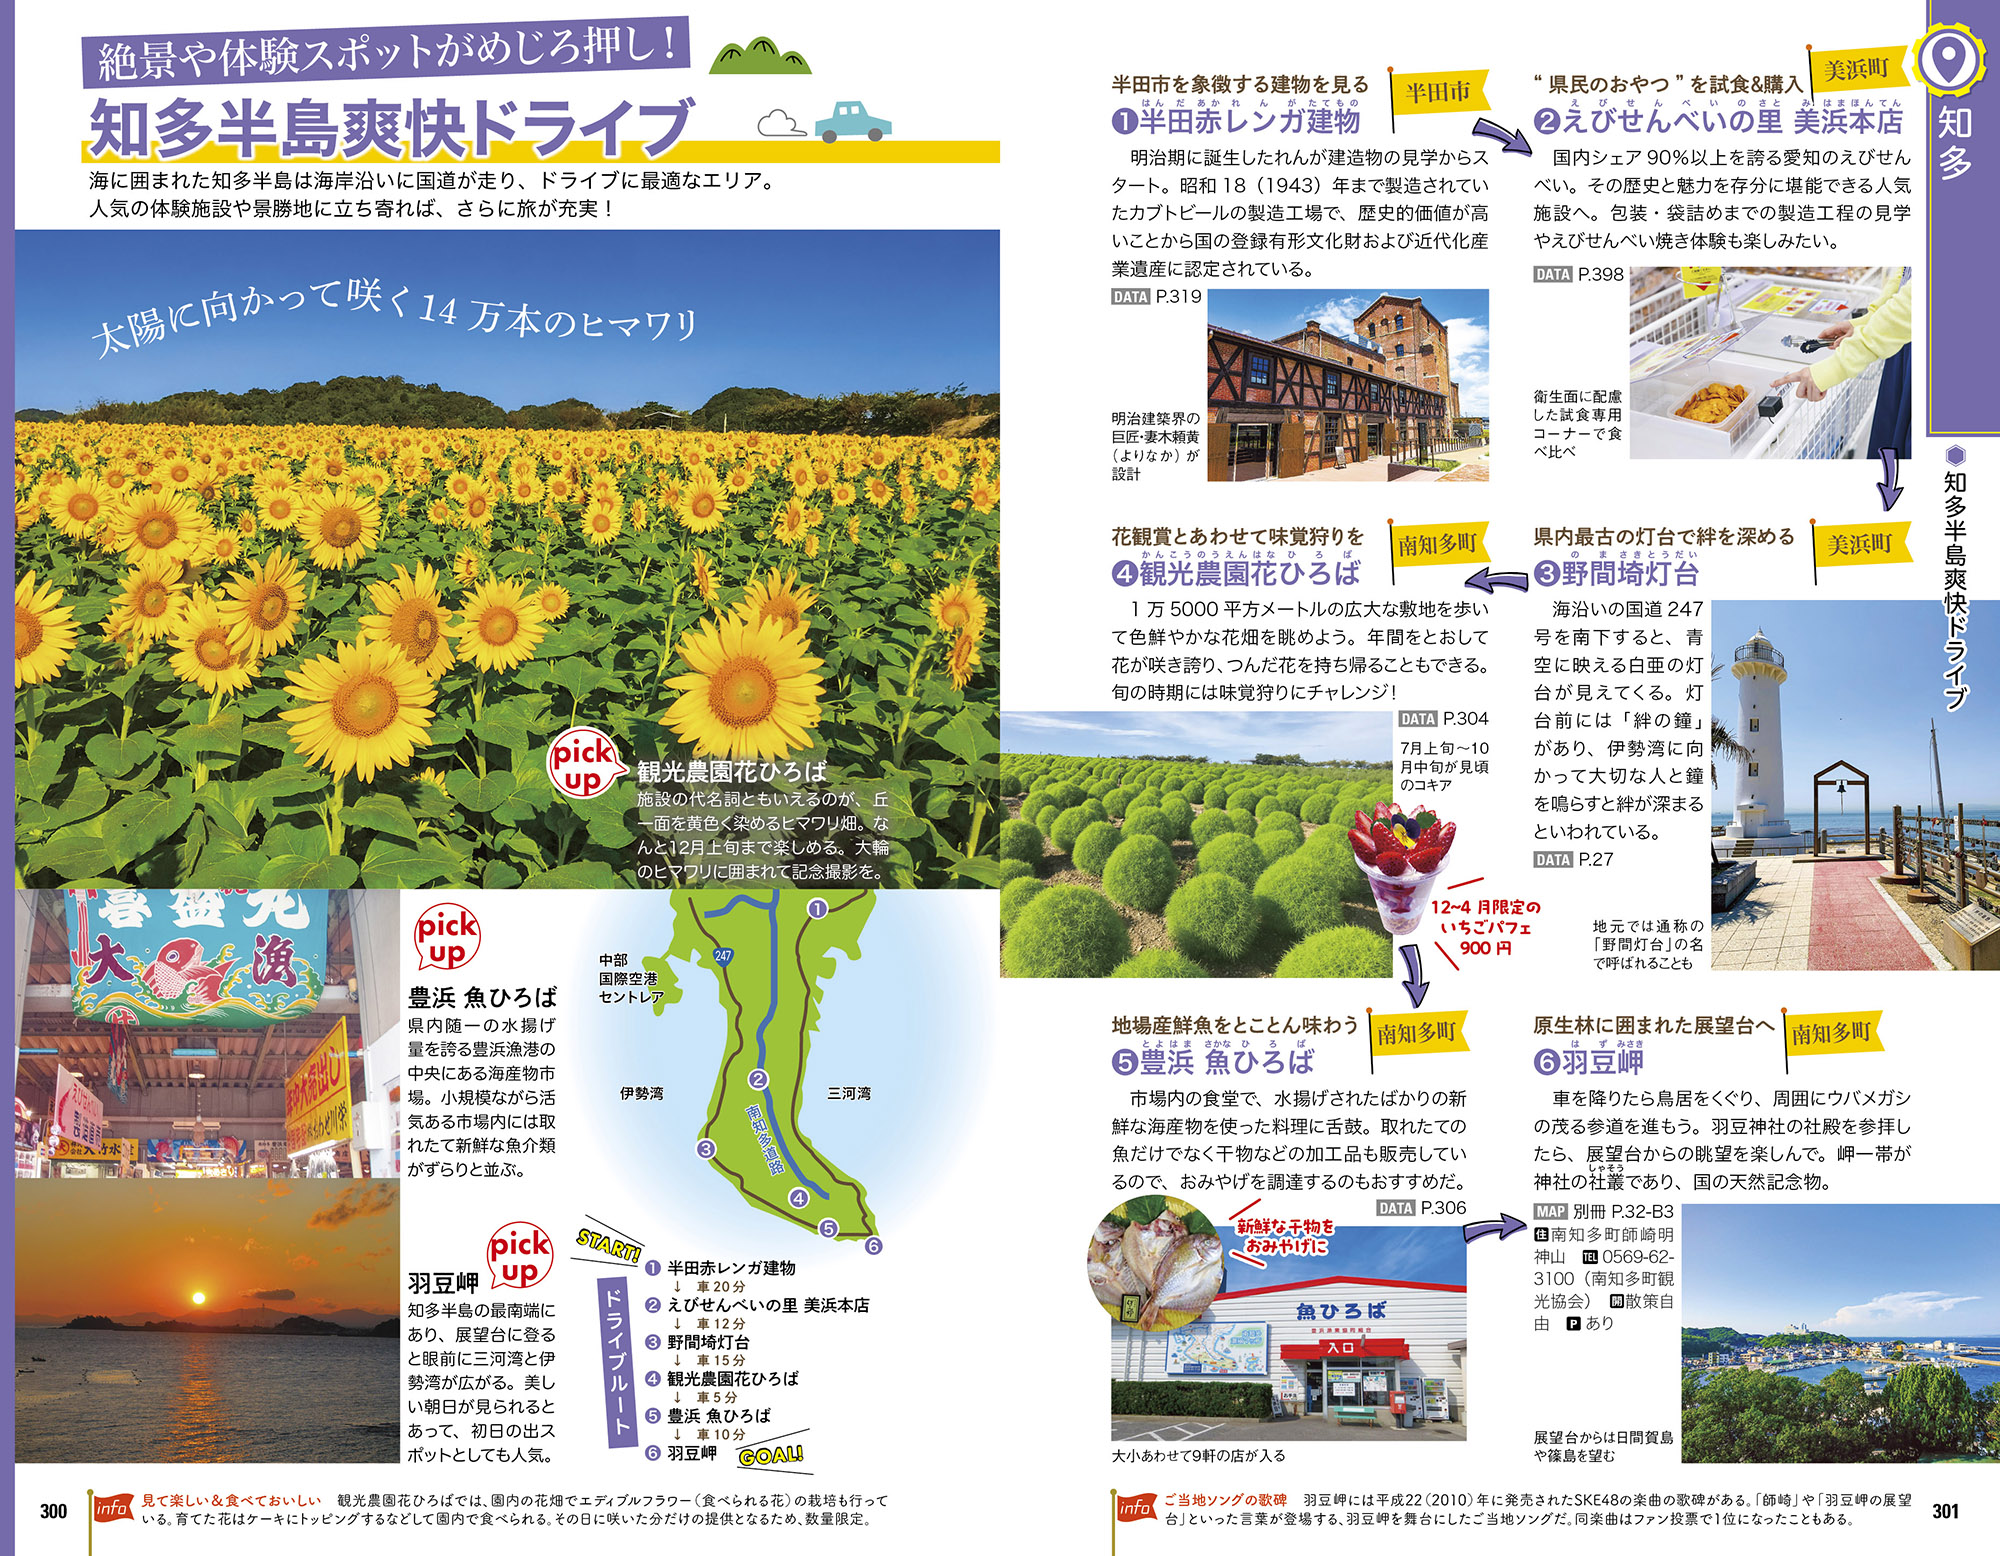 「日本でいちばん長い期間ヒマワリが楽しめるおすすめドライブルート」紙面